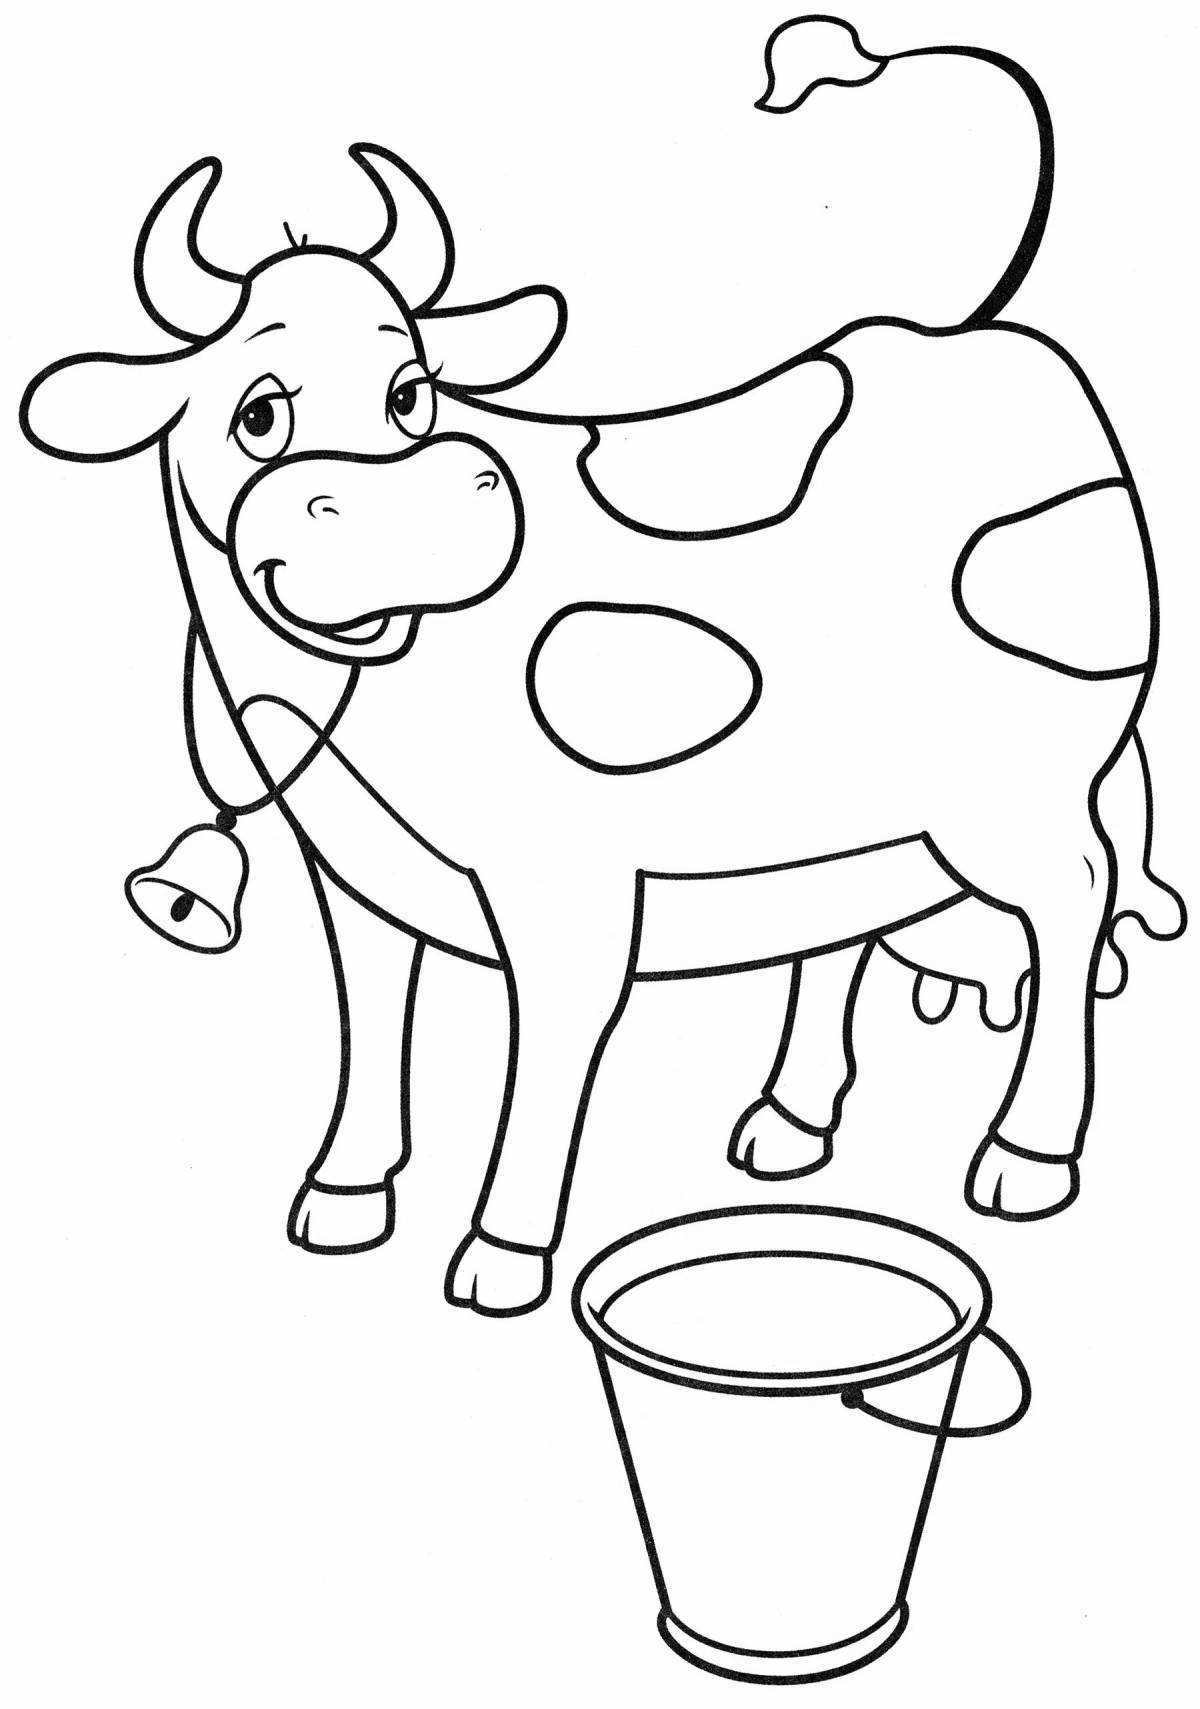 Радостный рисунок коровы для детей